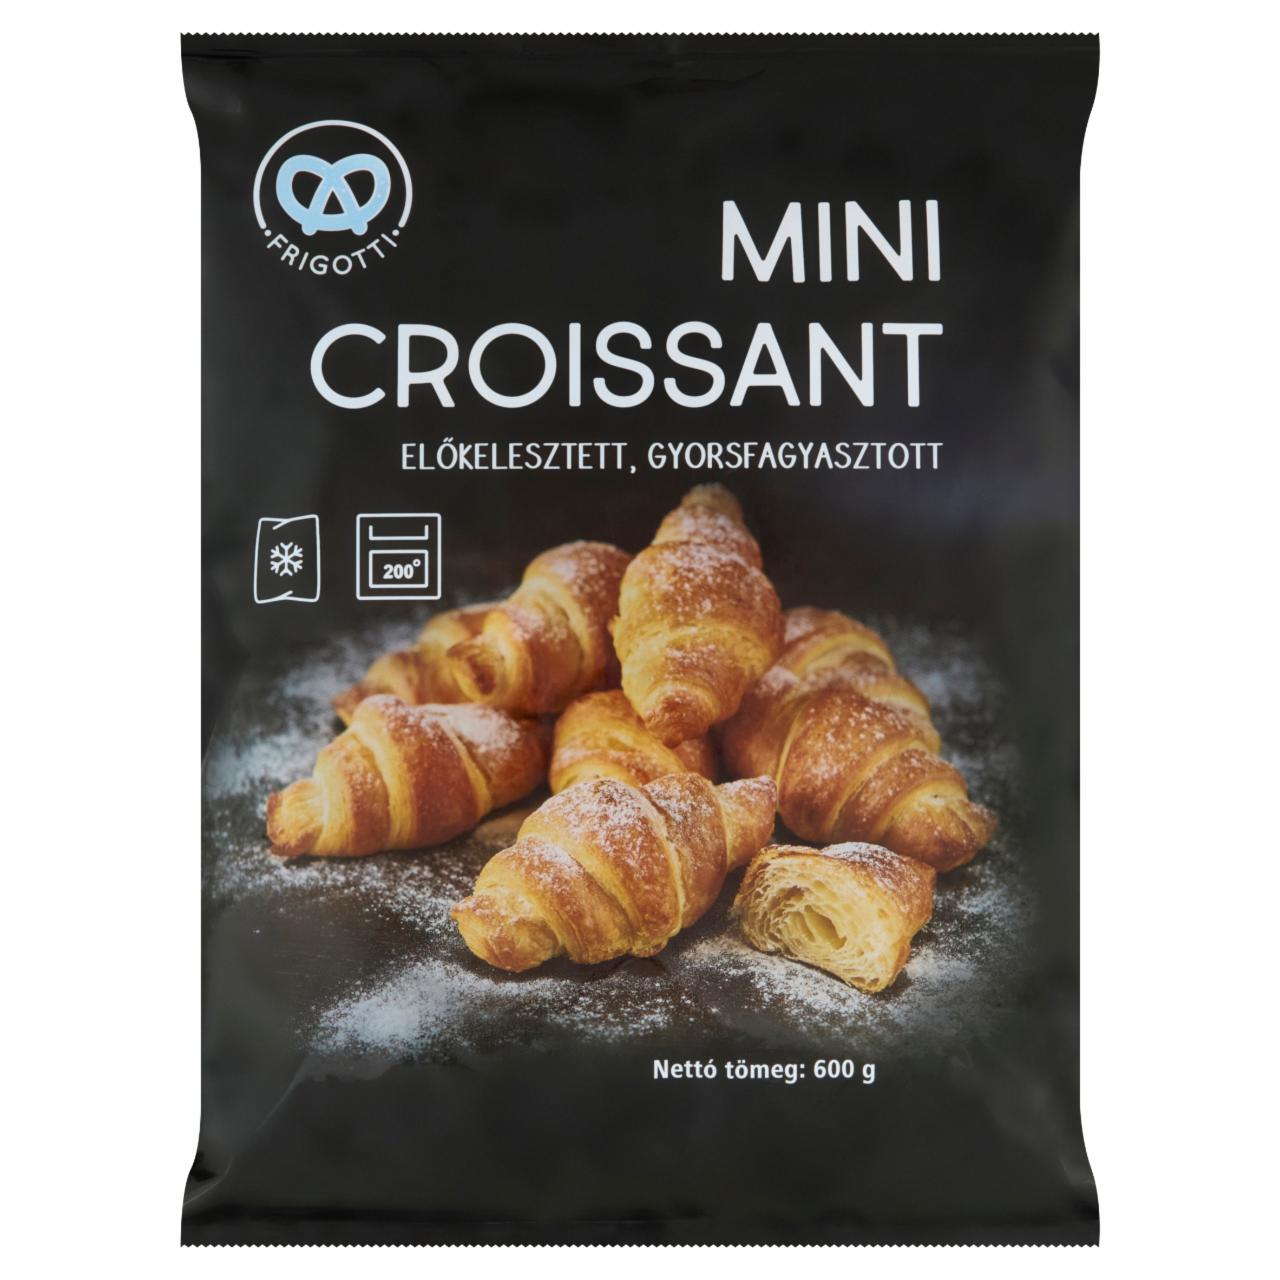 Képek - Frigotti előkelesztett, gyorsfagyasztott mini croissant 600 g